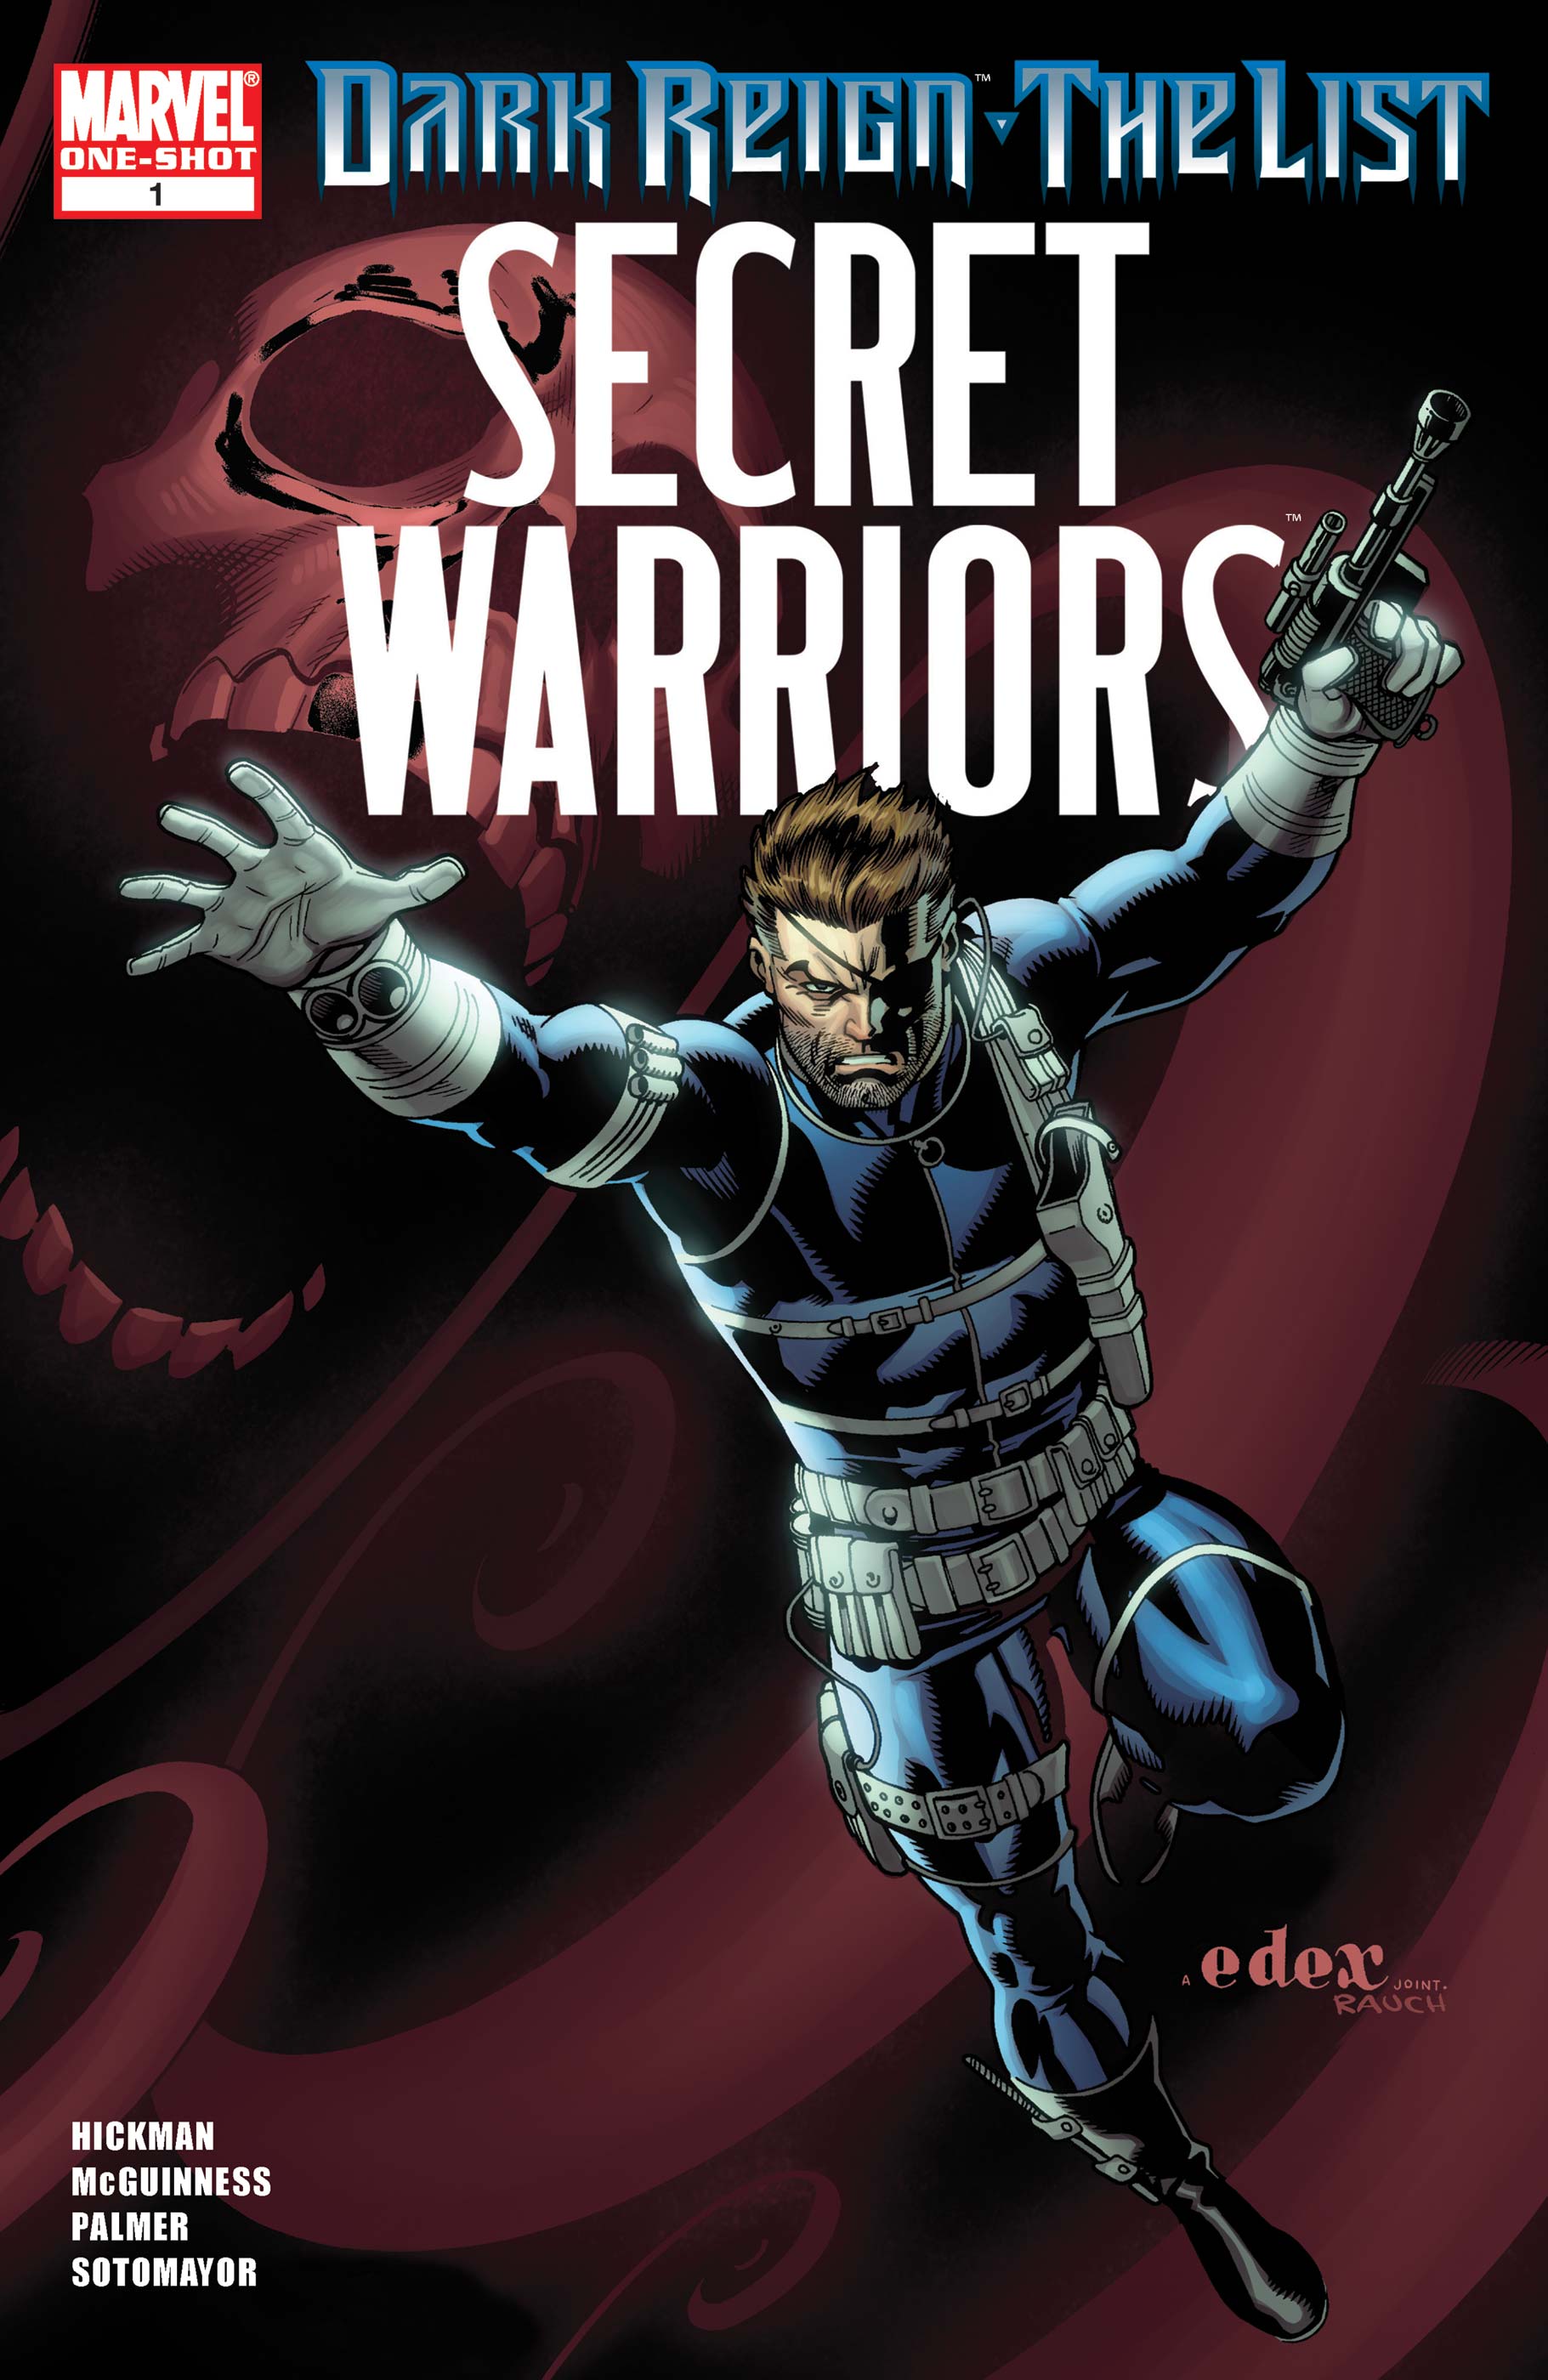 Dark Reign: The List - Secret Warriors (2009) #1